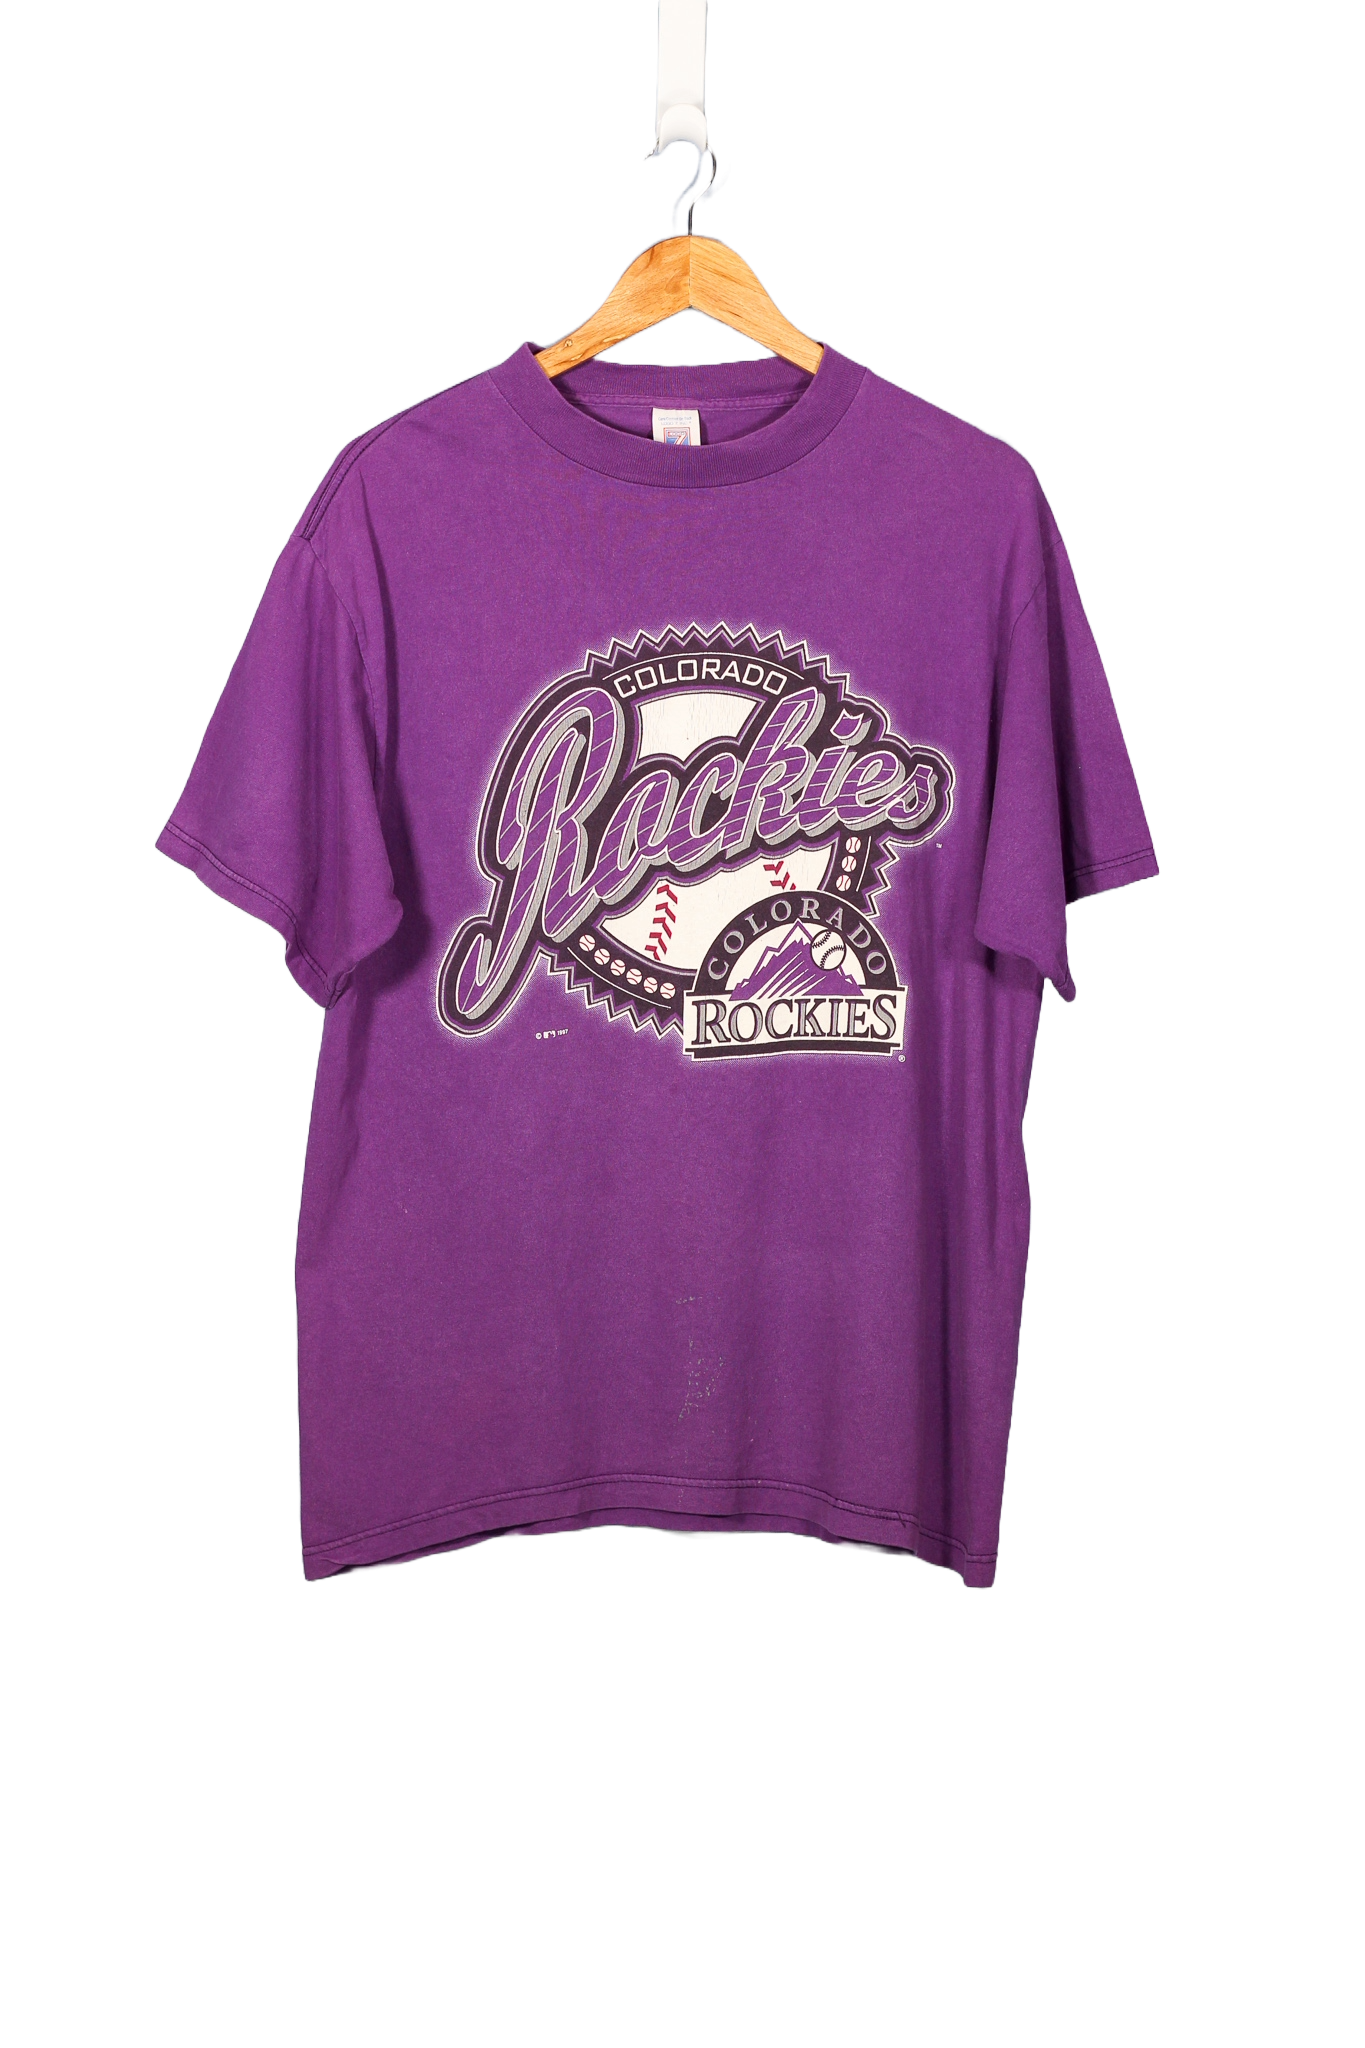 Vintage 1997 Colorado Rockies MLB T-Shirt - L